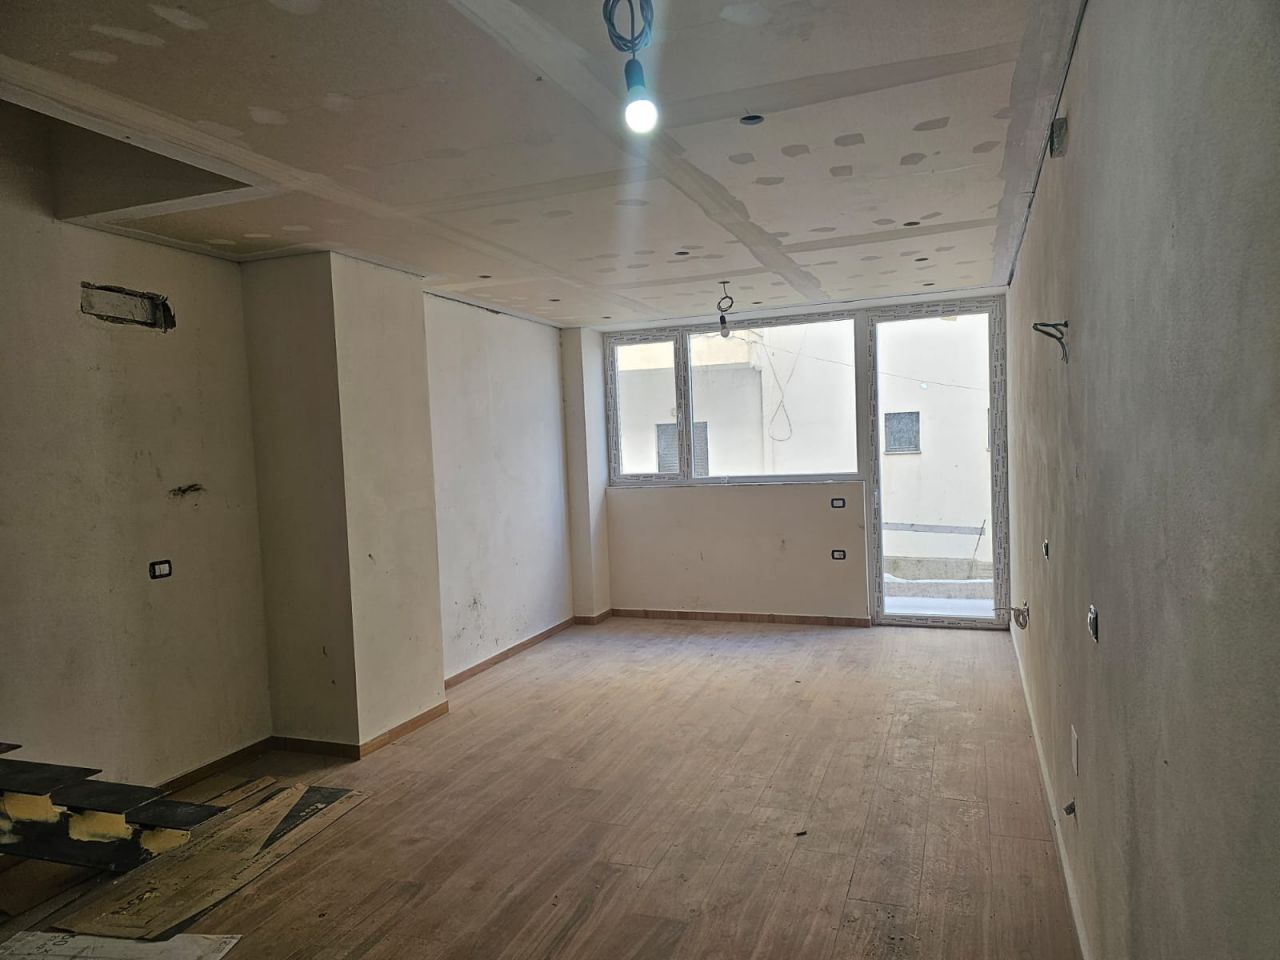 Apartament Duplex Per Shitje Ne Sarande Shqiperi, E Pozicionuar Ne Zone Te Mire Prane Plazhit